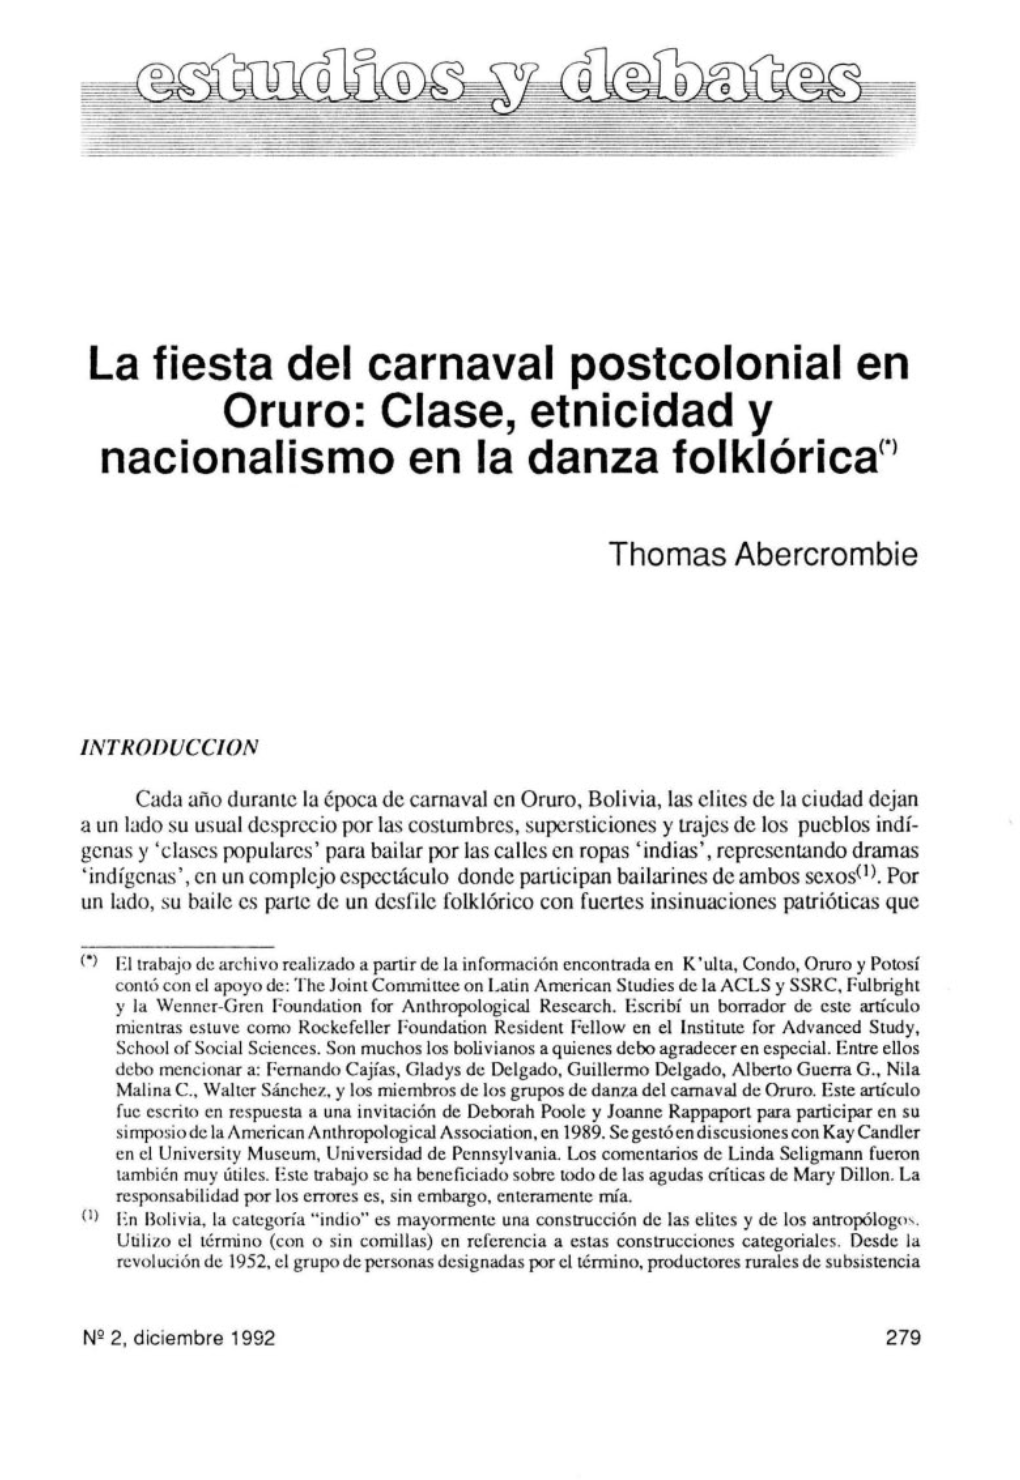 La Fiesta Del Carnaval Postcolonial En Oruro: Clase, Etnicidad Y